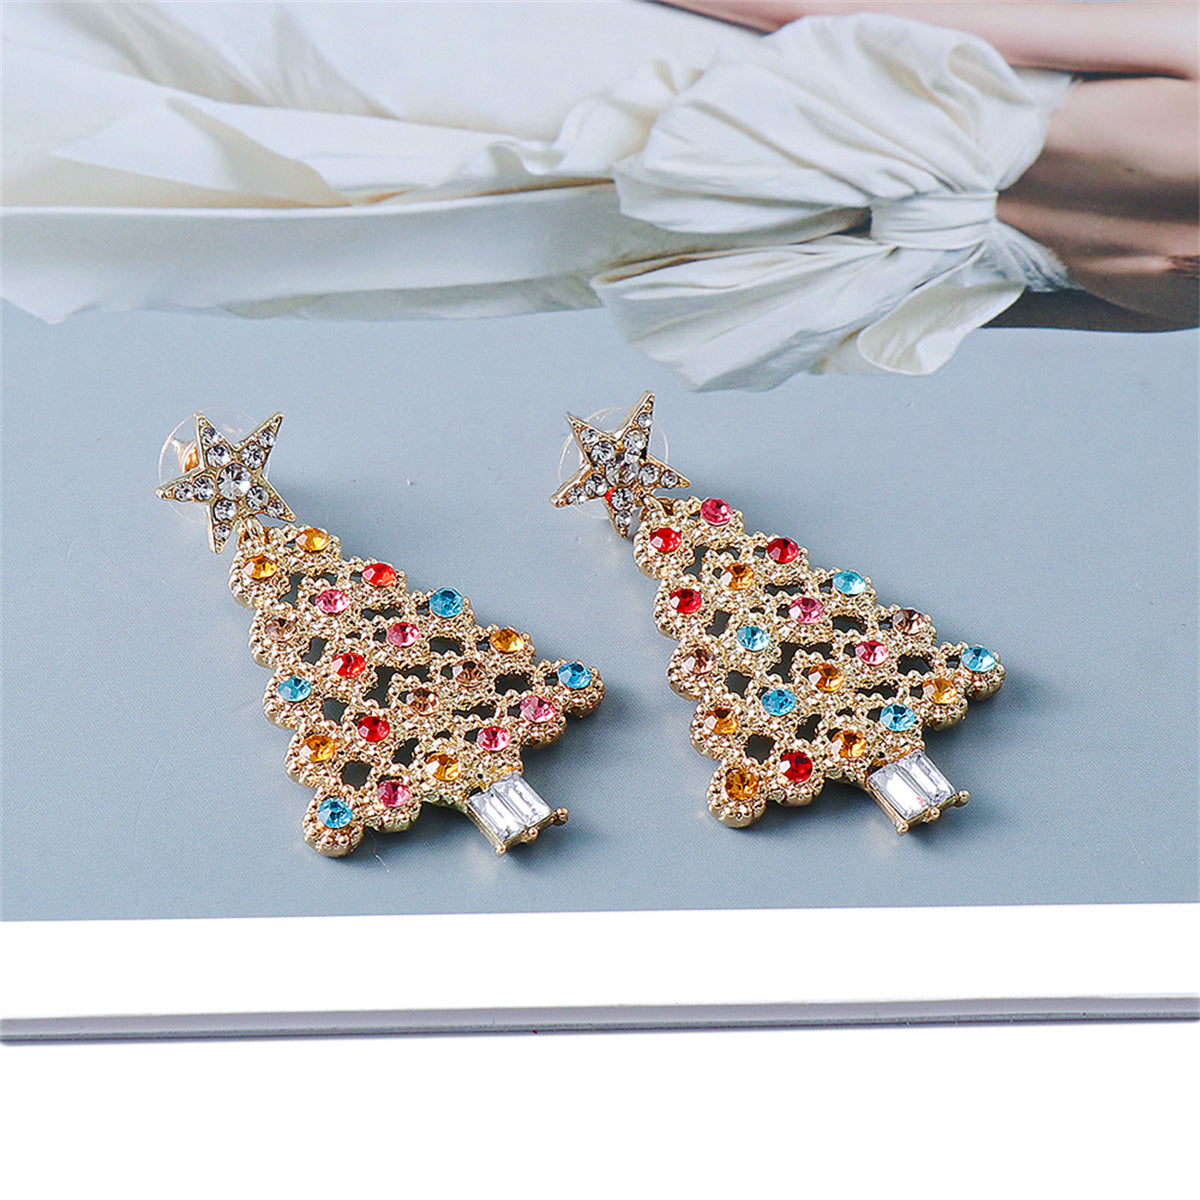 Jewel-Tone Cubic Zirconia & 18K Gold-Plated Festive Tree Drop Earrings